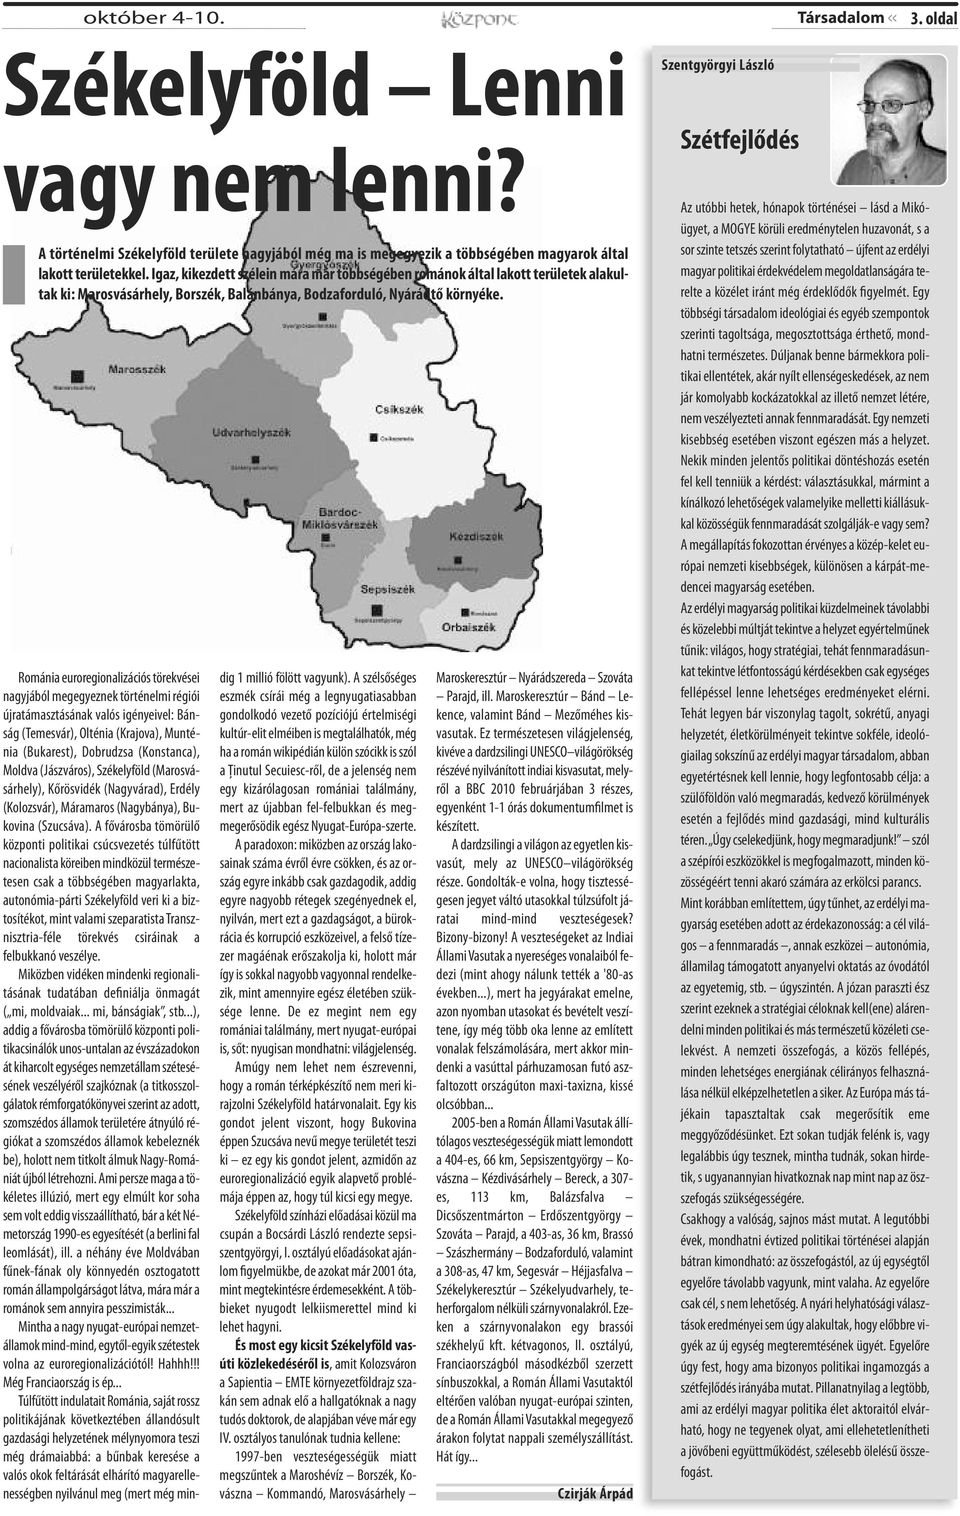 Románia euroregionalizációs törekvései nagyjából megegyeznek történelmi régiói újratámasztásának valós igényeivel: Bánság (Temesvár), Olténia (Krajova), Munténia (Bukarest), Dobrudzsa (Konstanca),